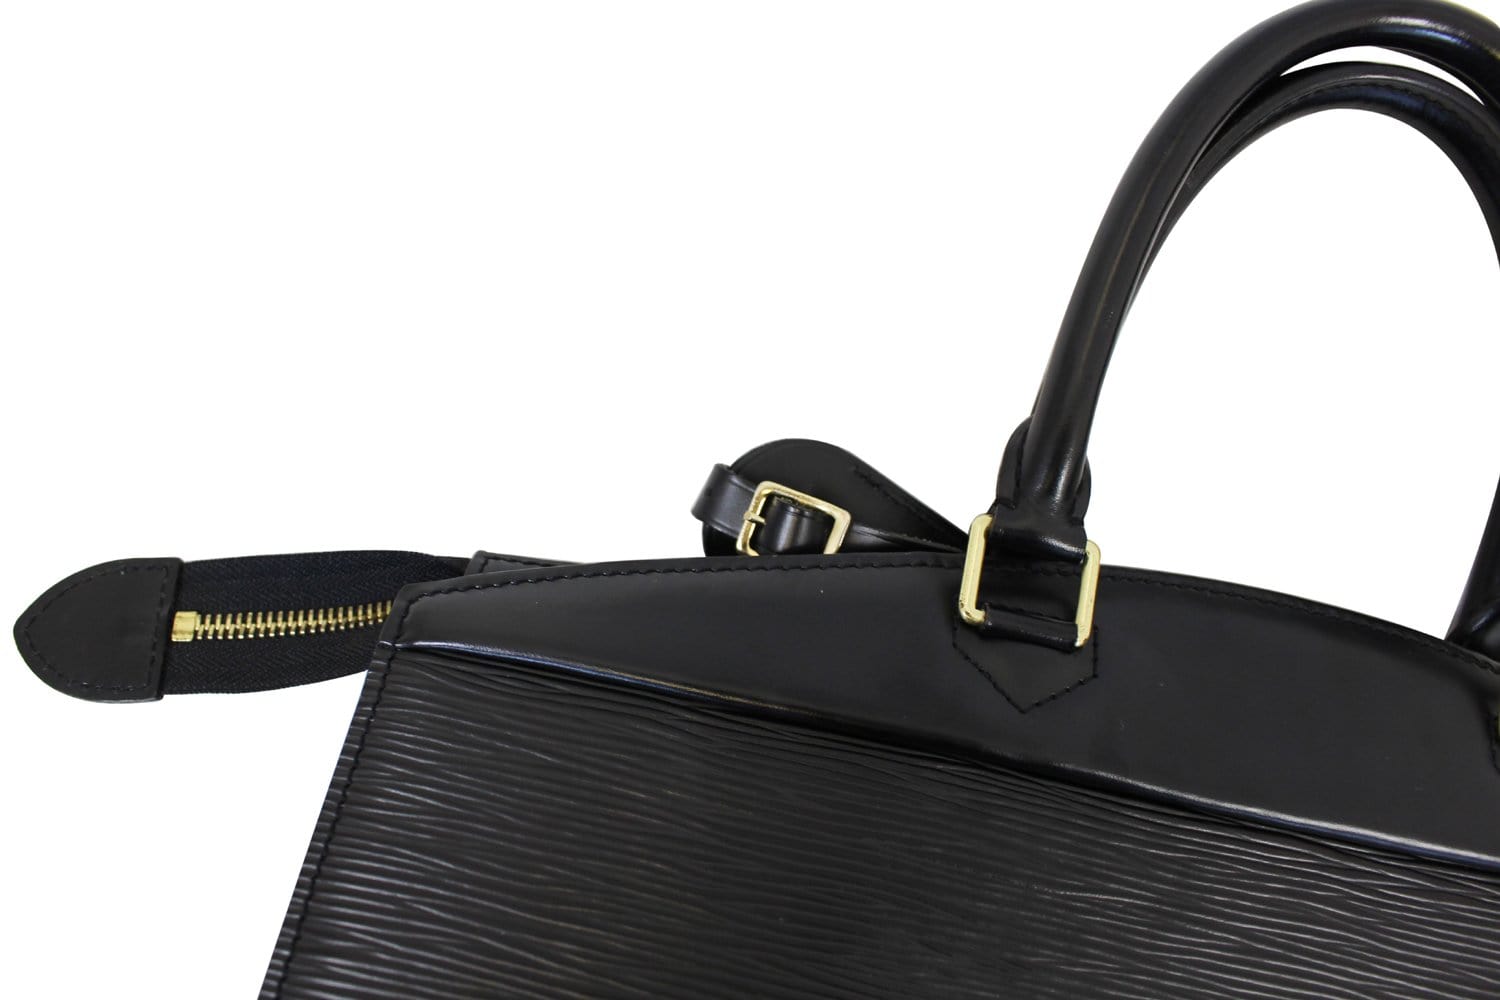 Louis Vuitton Vanity Case Riviera 871998 Noir Black Epi Leather Weekend/Travel  Bag, Louis Vuitton